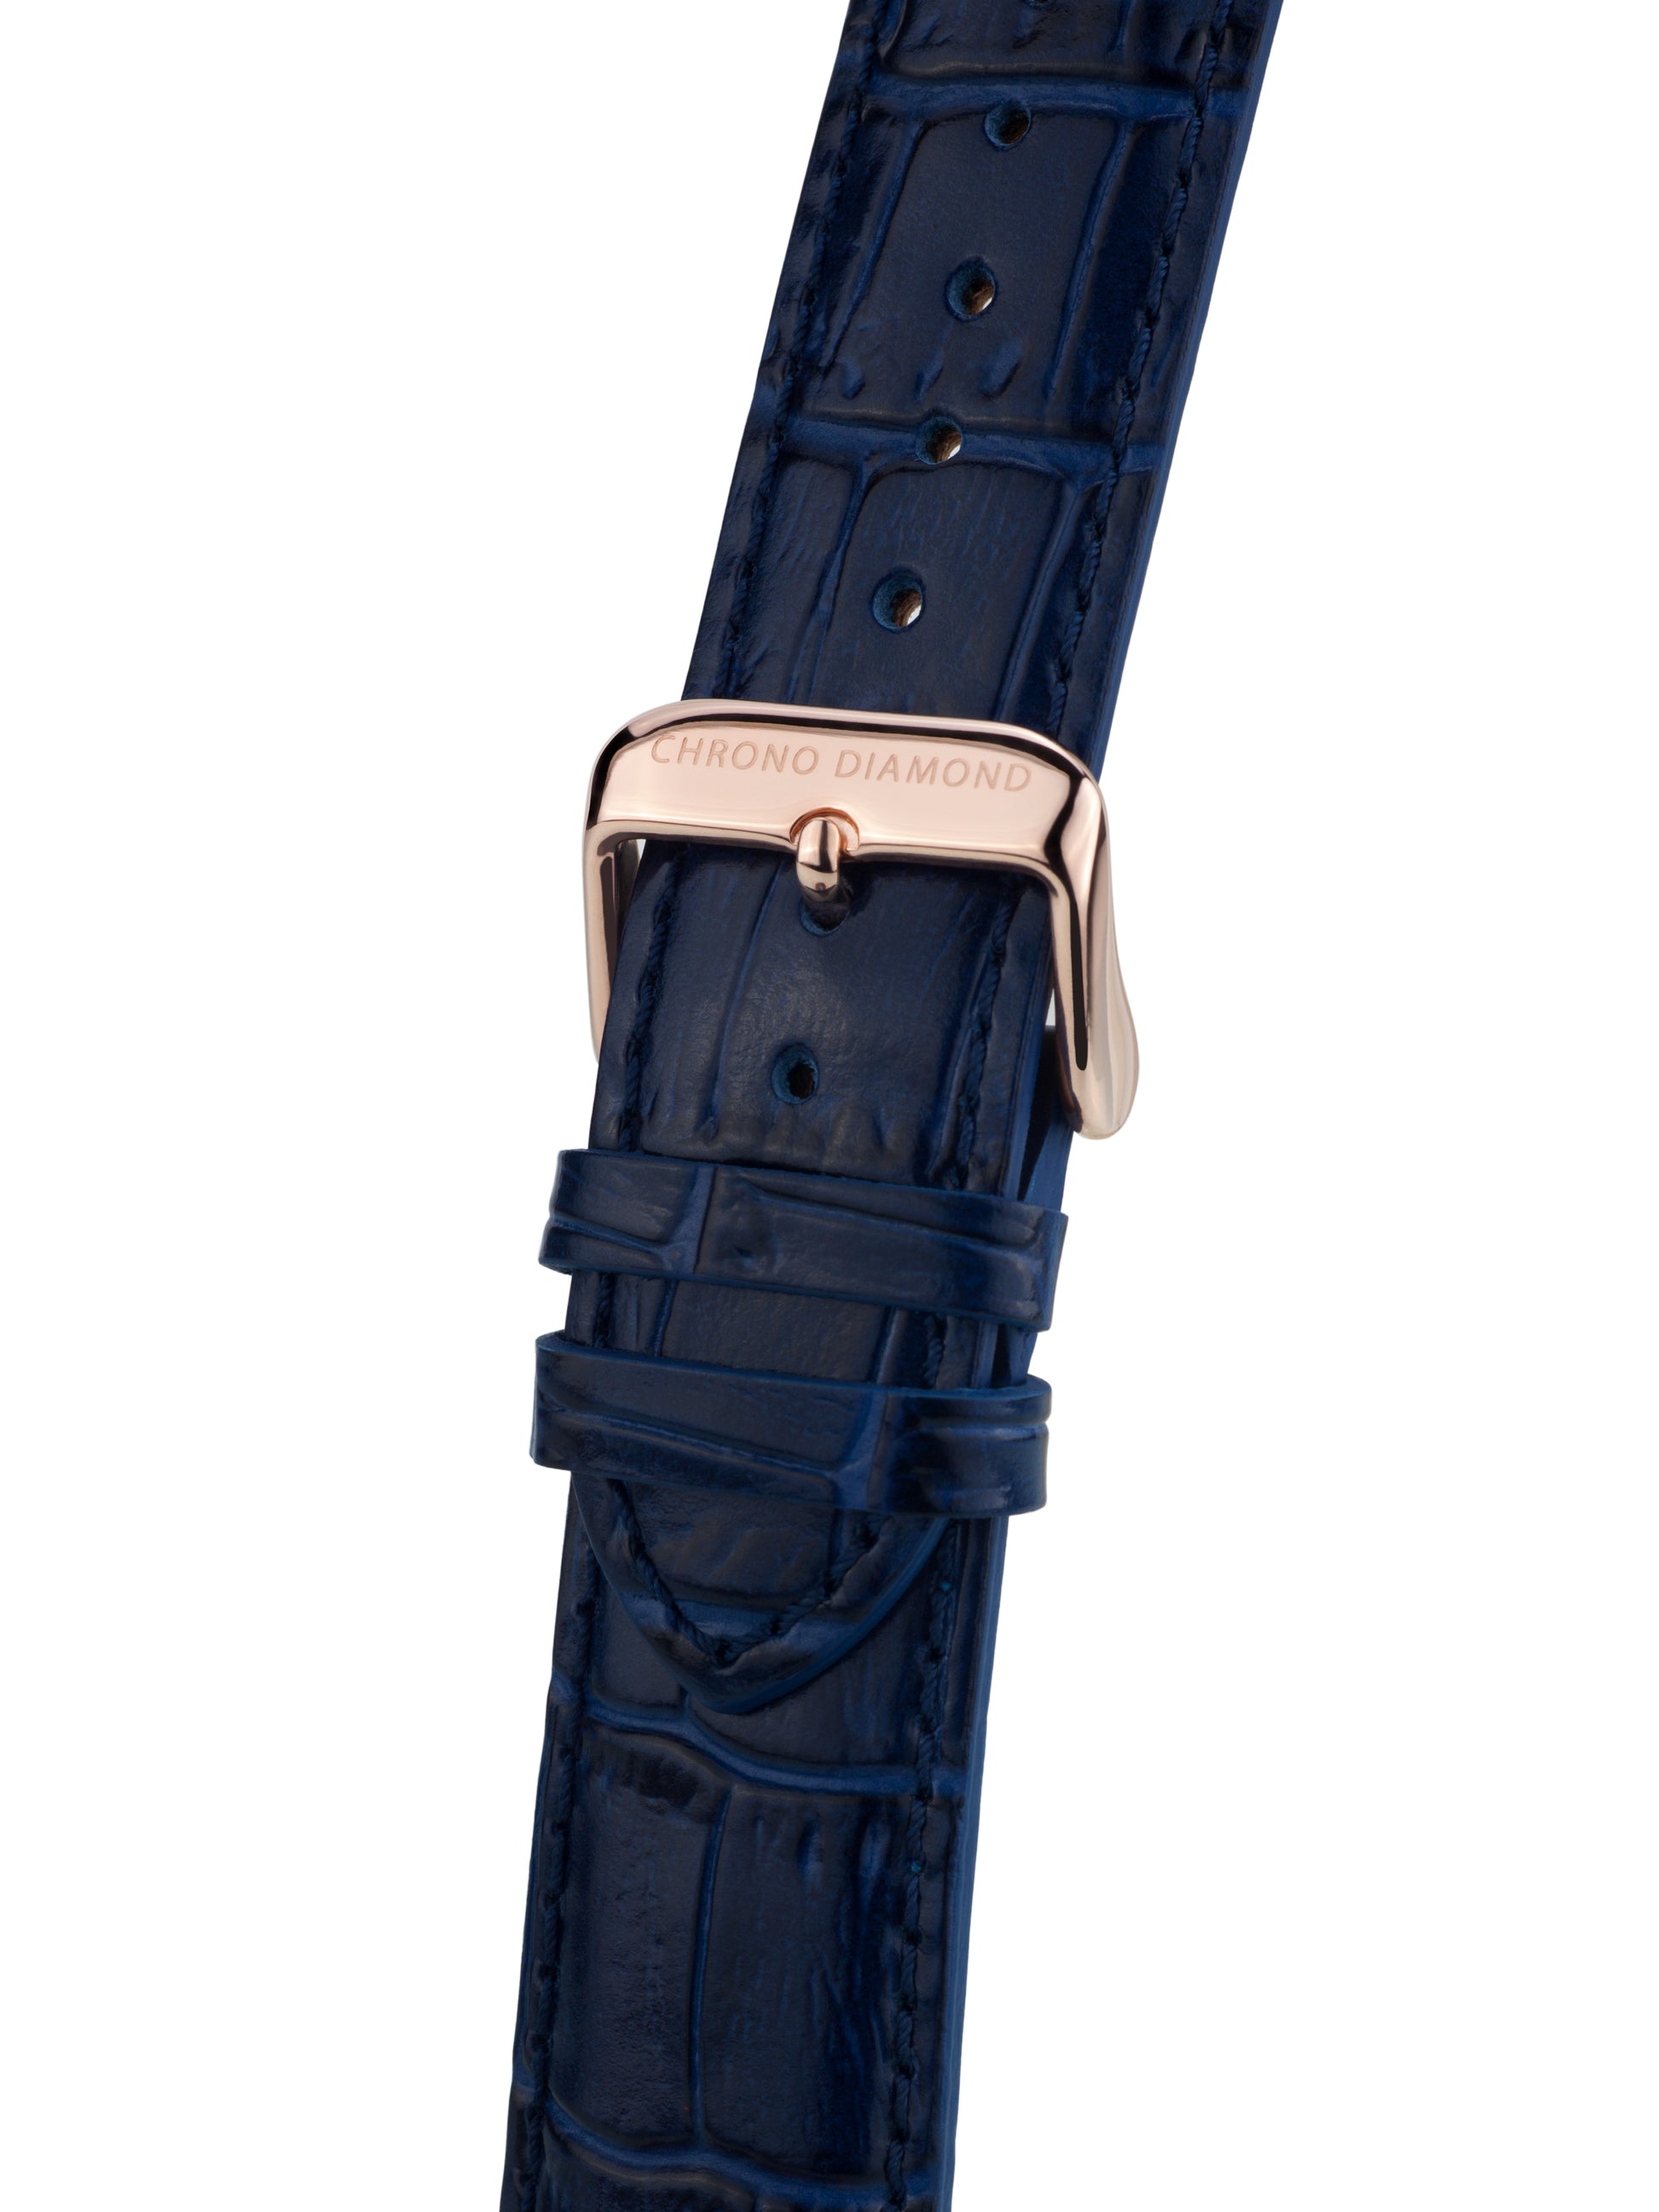 bracelet watches — leather band Argos — Band — blue rosegold